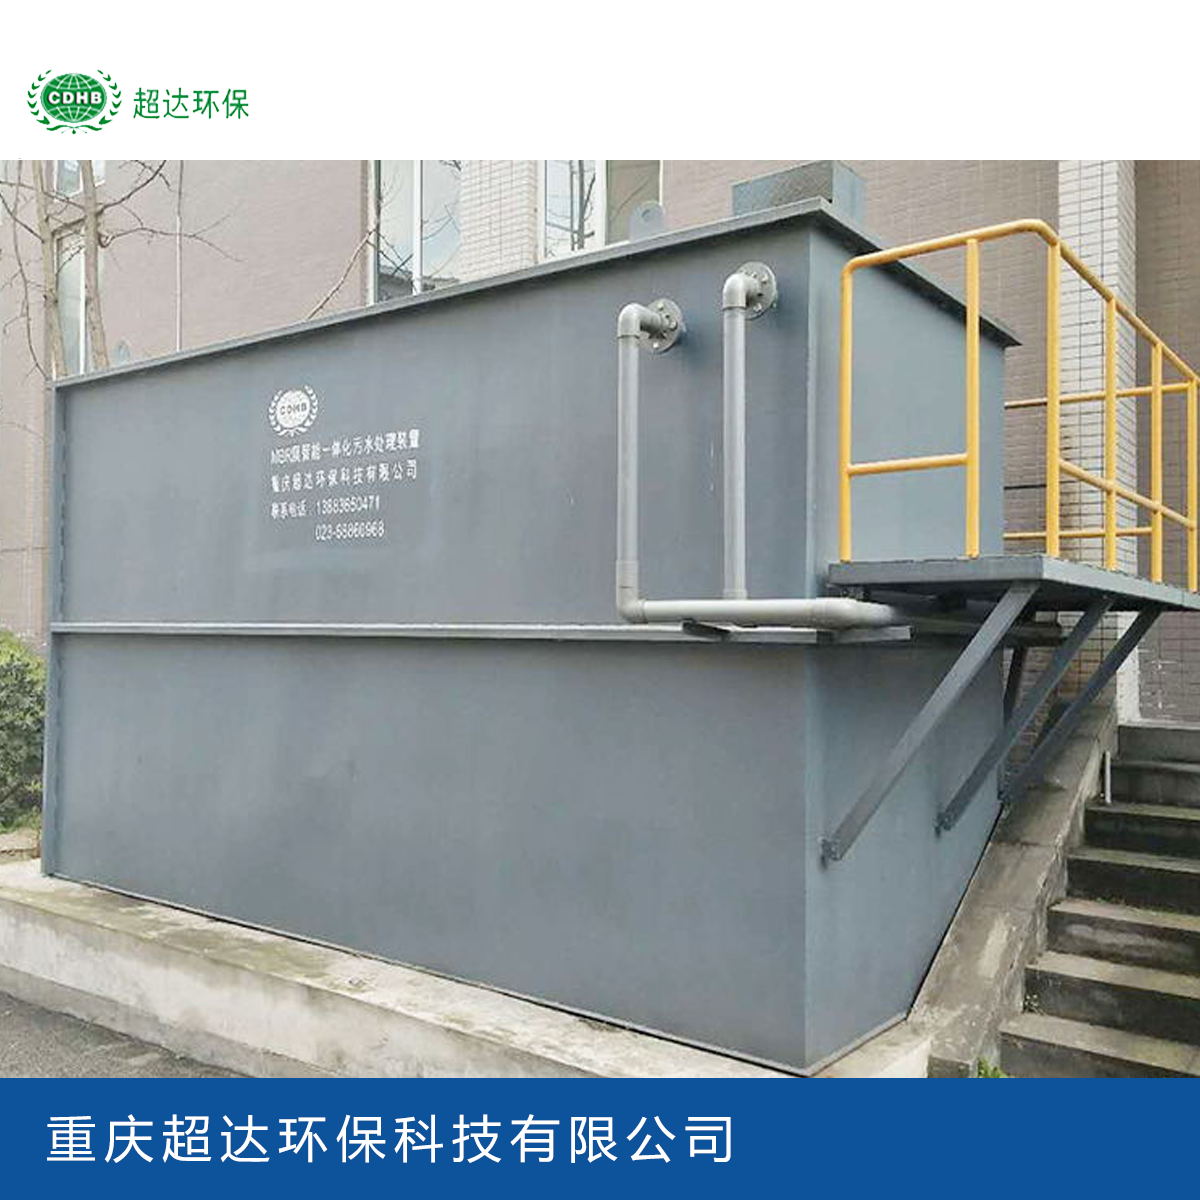 一体化污水处理设备厂家_重庆超达环保科技图片